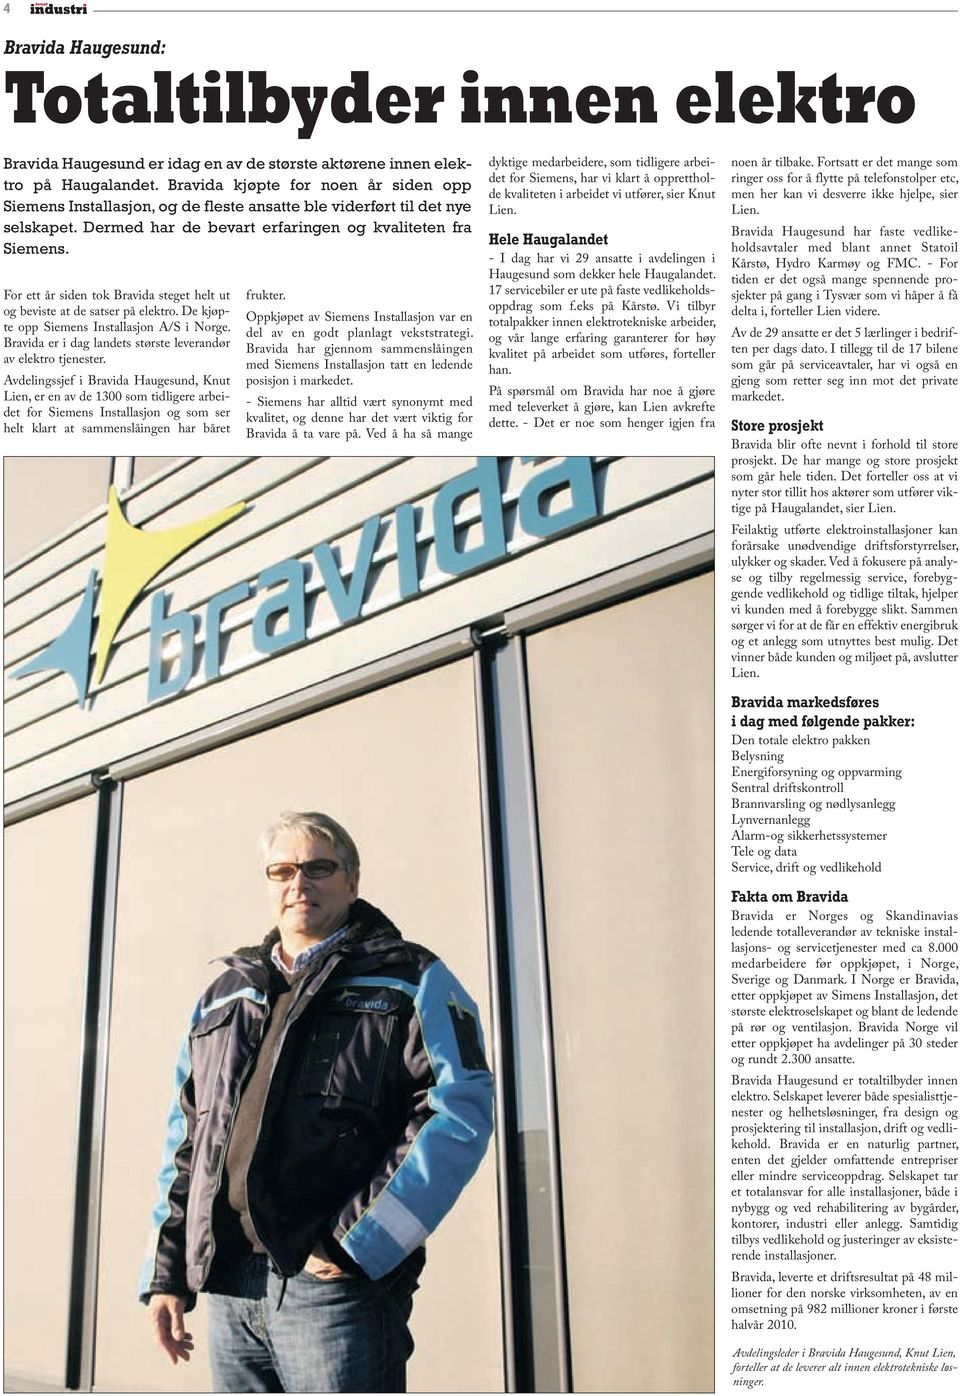 For ett år siden tok Bravida steget helt ut og beviste at de satser på elektro. De kjøpte opp Siemens Installasjon A/S i Norge. Bravida er i dag landets største leverandør av elektro tjenester.